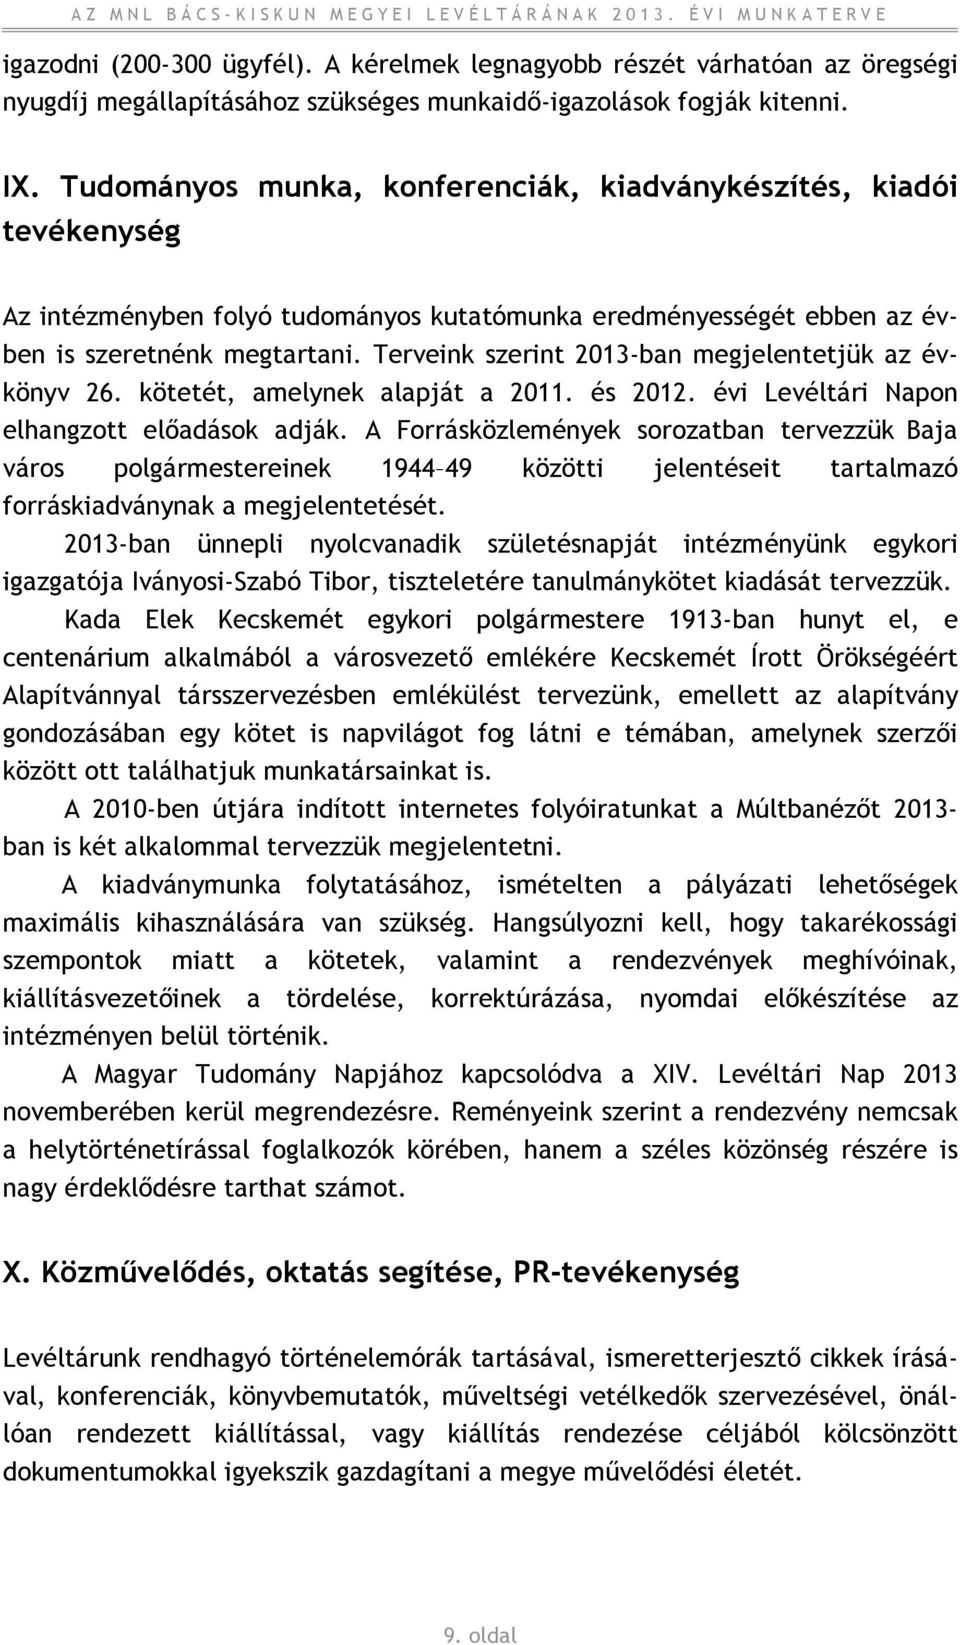 Terveink szerint 2013-ban megjelentetjük az évkönyv 26. kötetét, amelynek alapját a 2011. és 2012. évi Levéltári Napon elhangzott előadások adják.